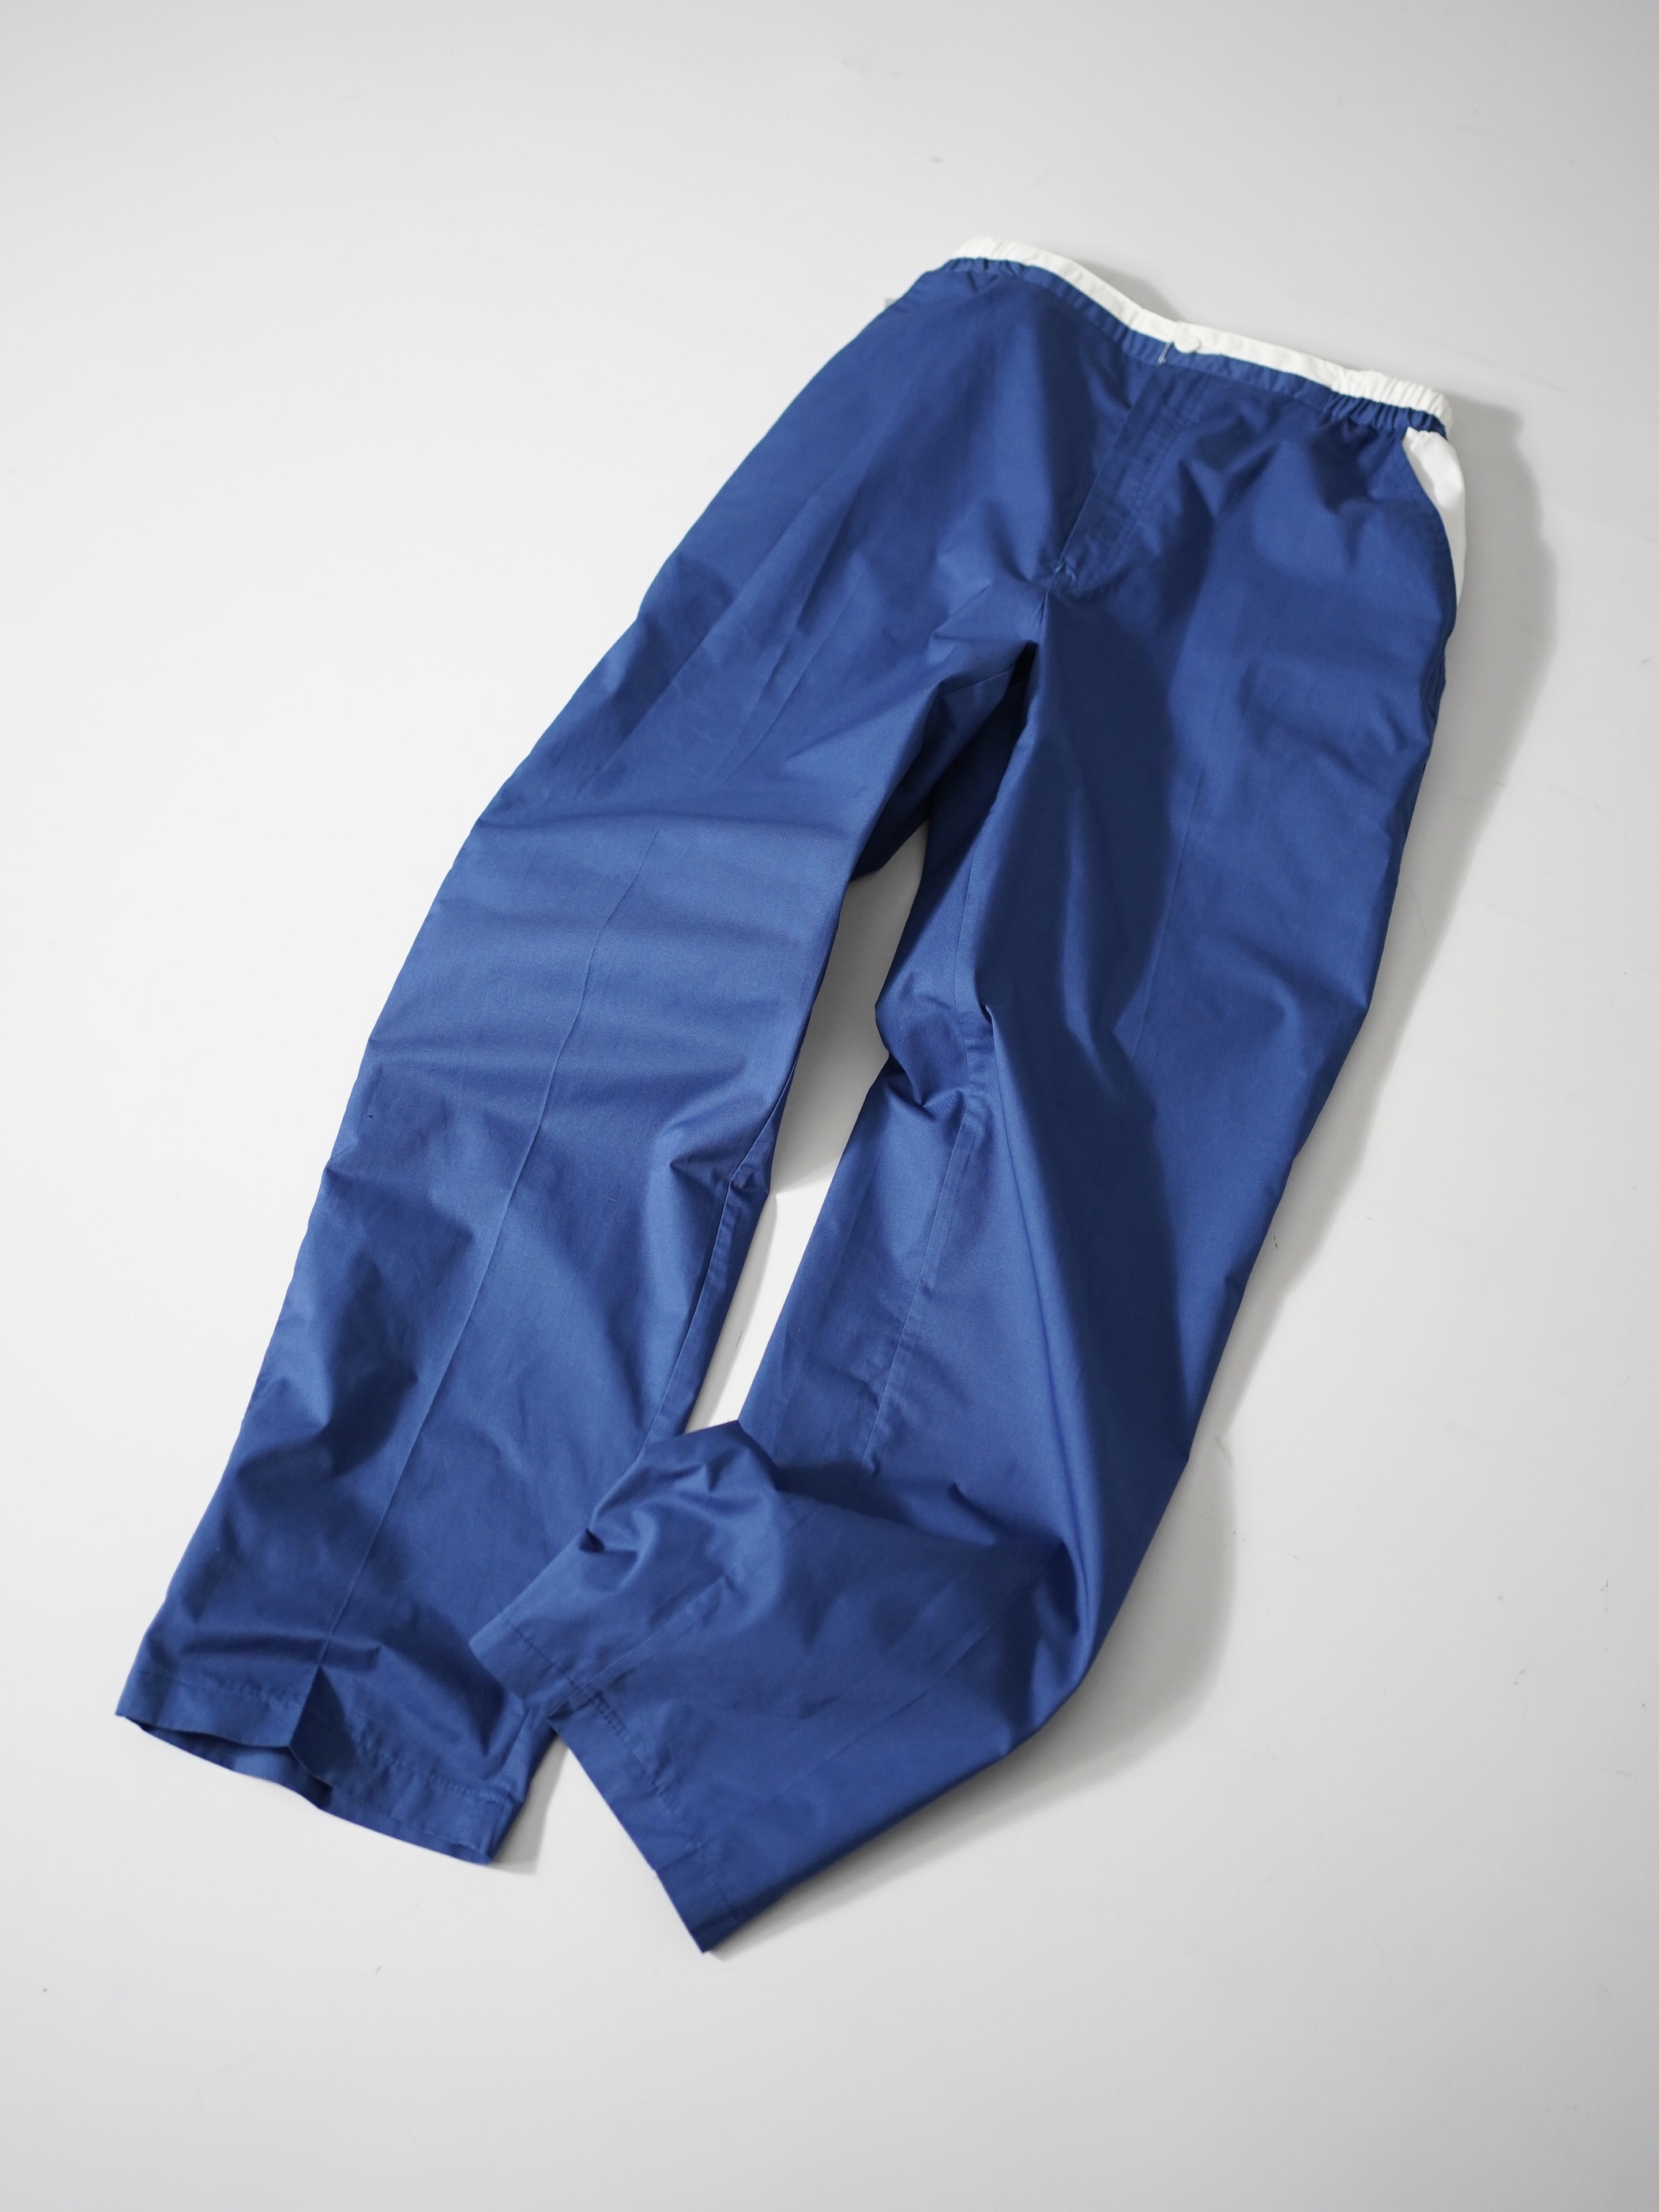 NOS 1980's pierre cardin Cotton Poly Design pants